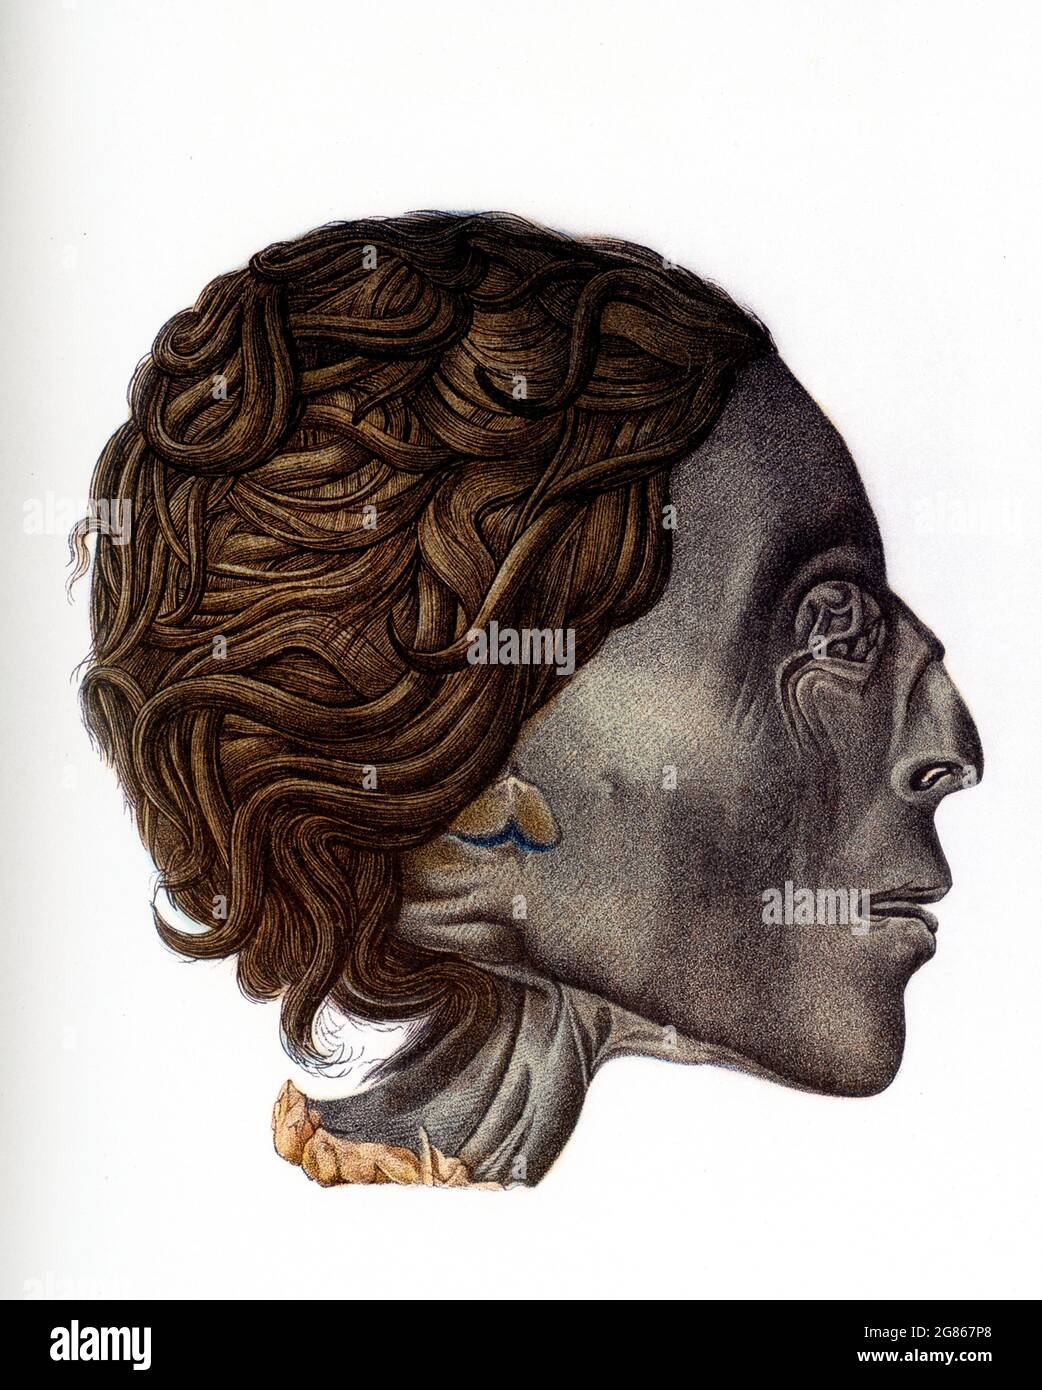 La didascalia che accompagna questa illustrazione del 1903 nel libro di Gaston Maspero sull'Egitto recita: "Profilo della testa di una mummia - femmina - tomba di Tebe". Foto Stock